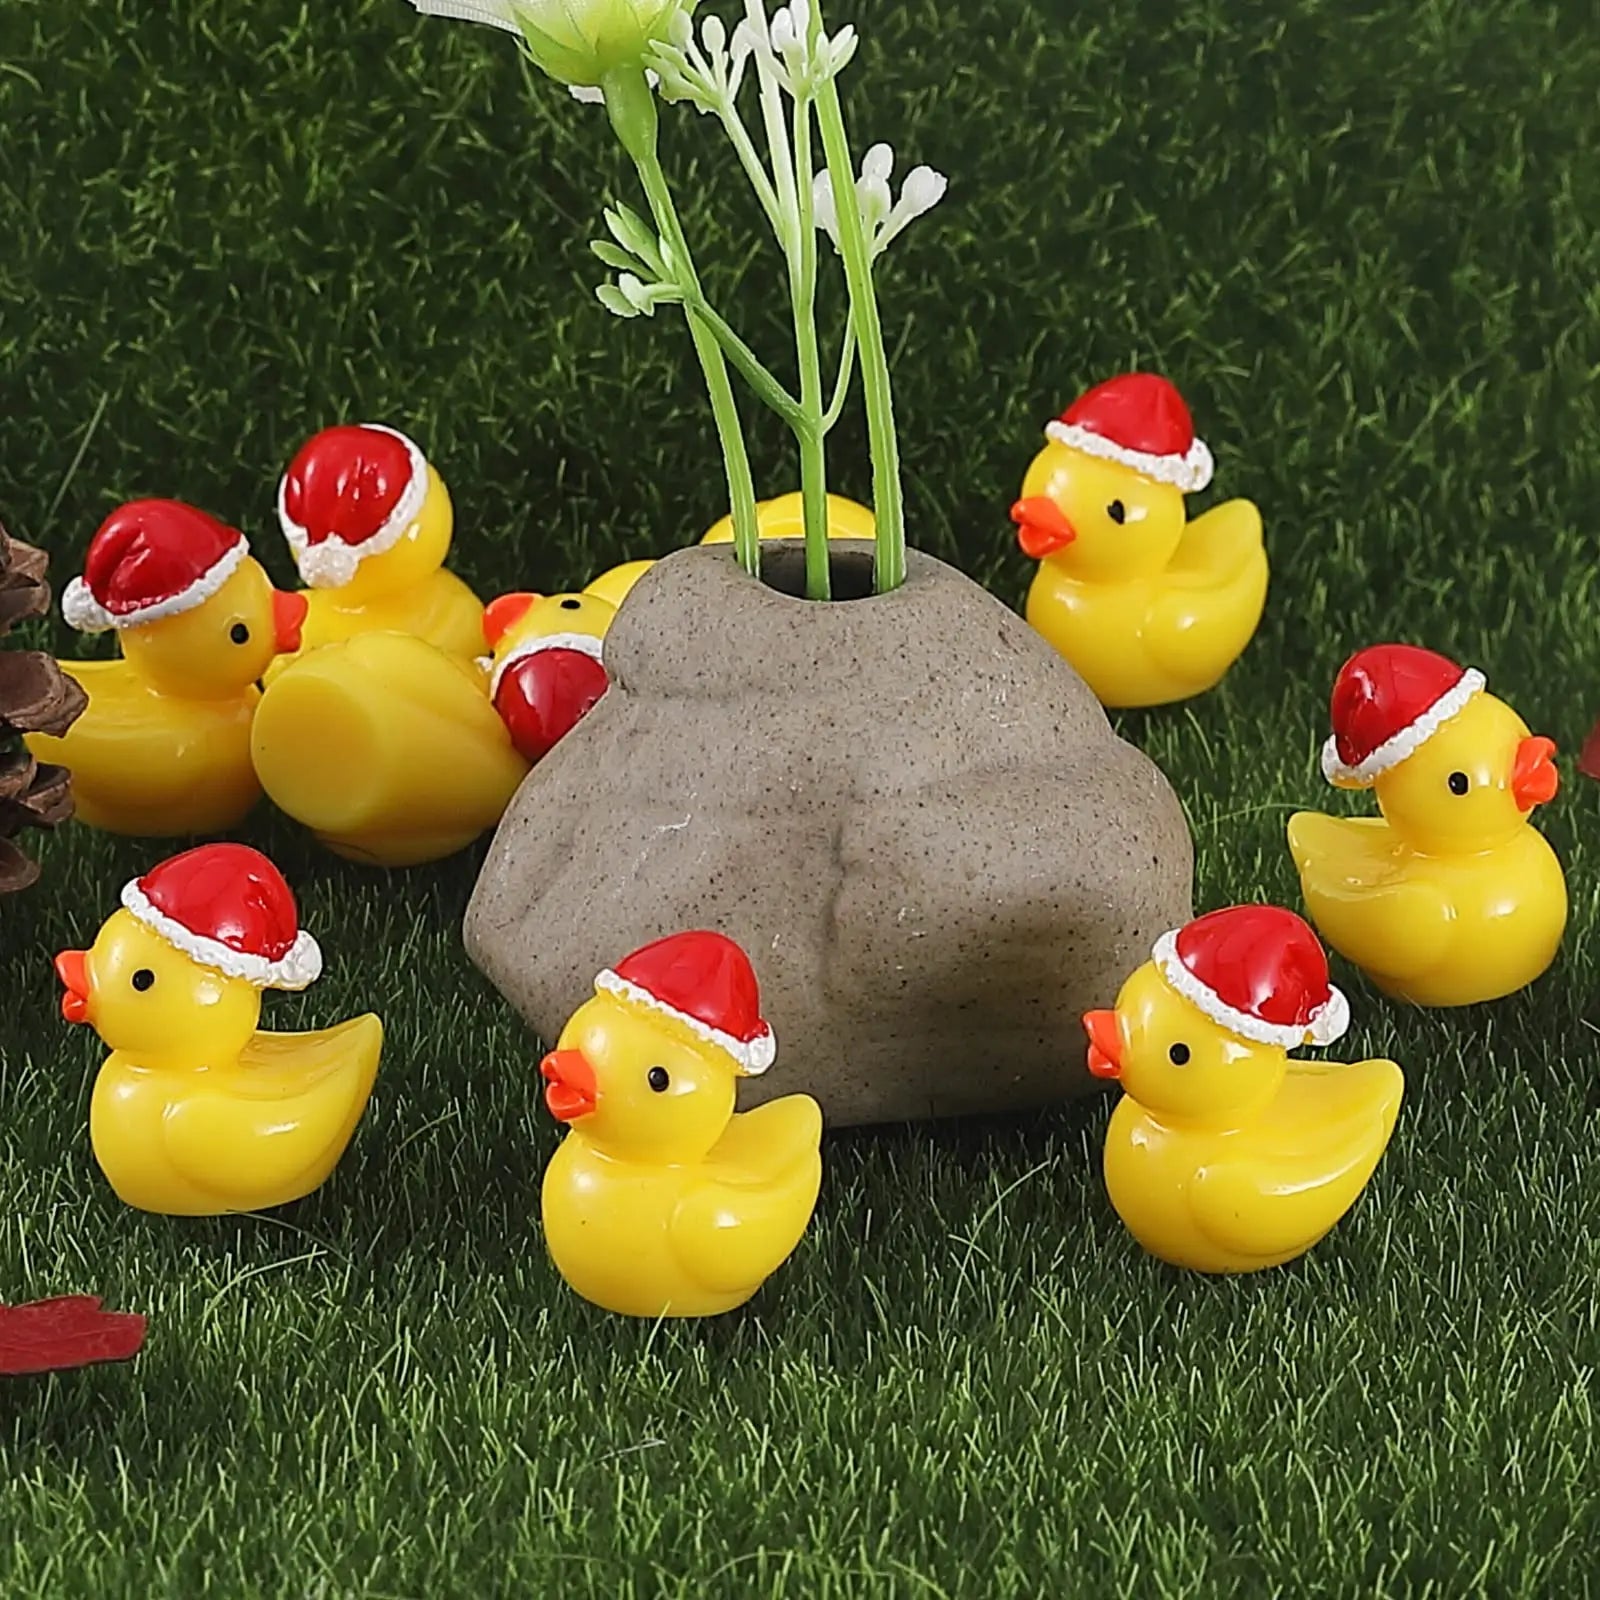 Mini Christmas Ducks Figurines - Resin Duck with Christmas Hat for Fairy Garden Décor 10/20/50pcs